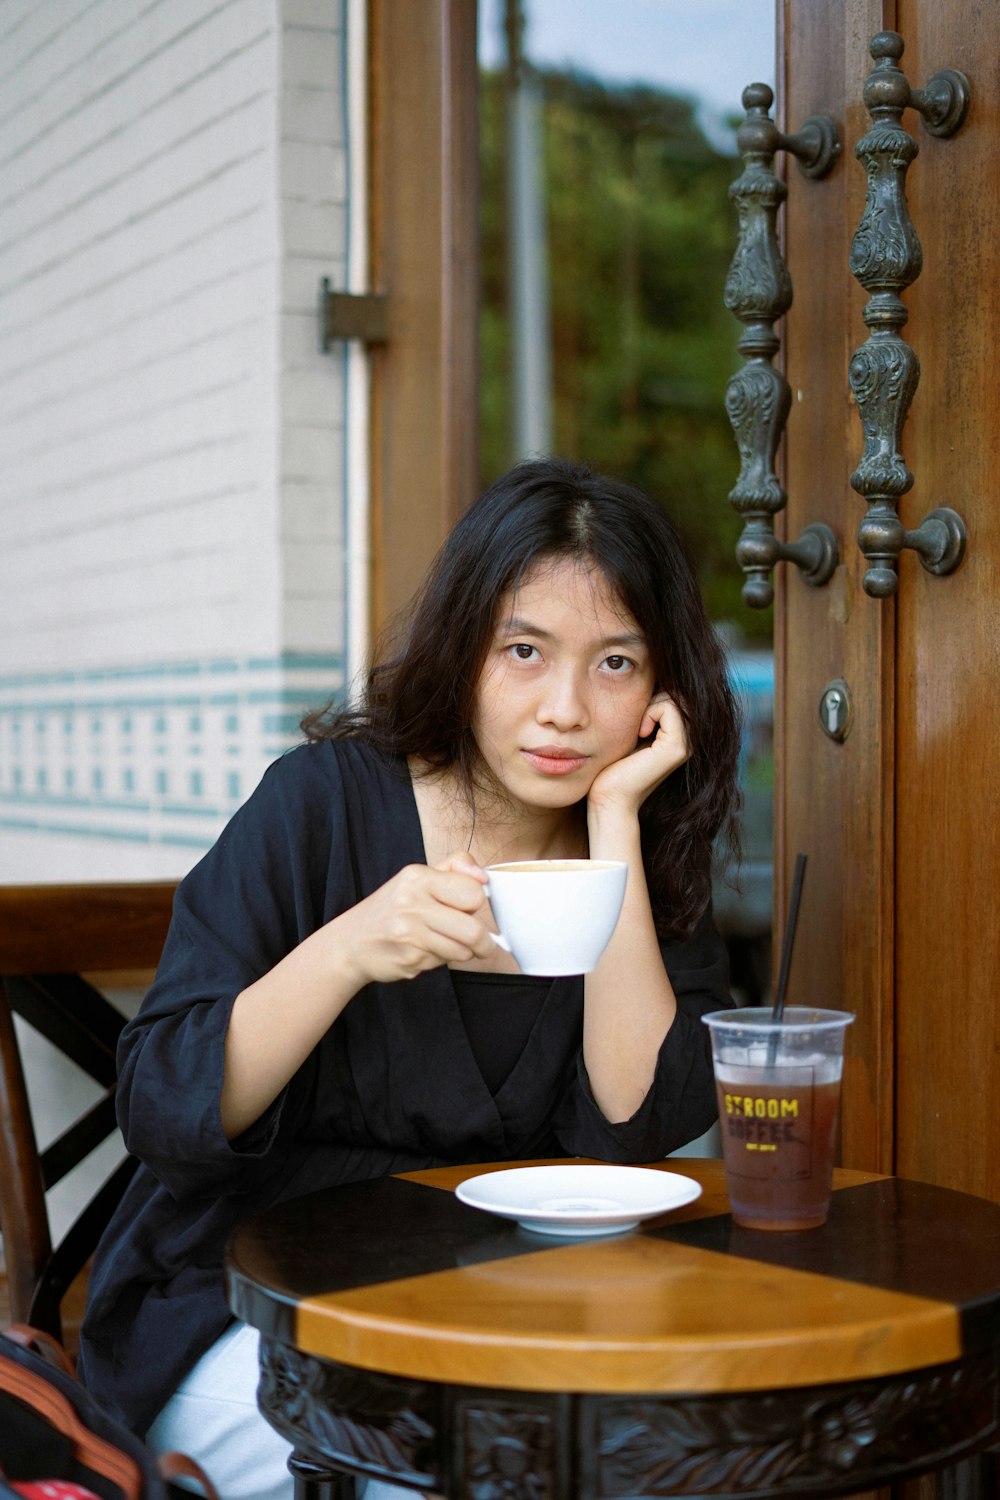 woman in black shirt holding white ceramic mug